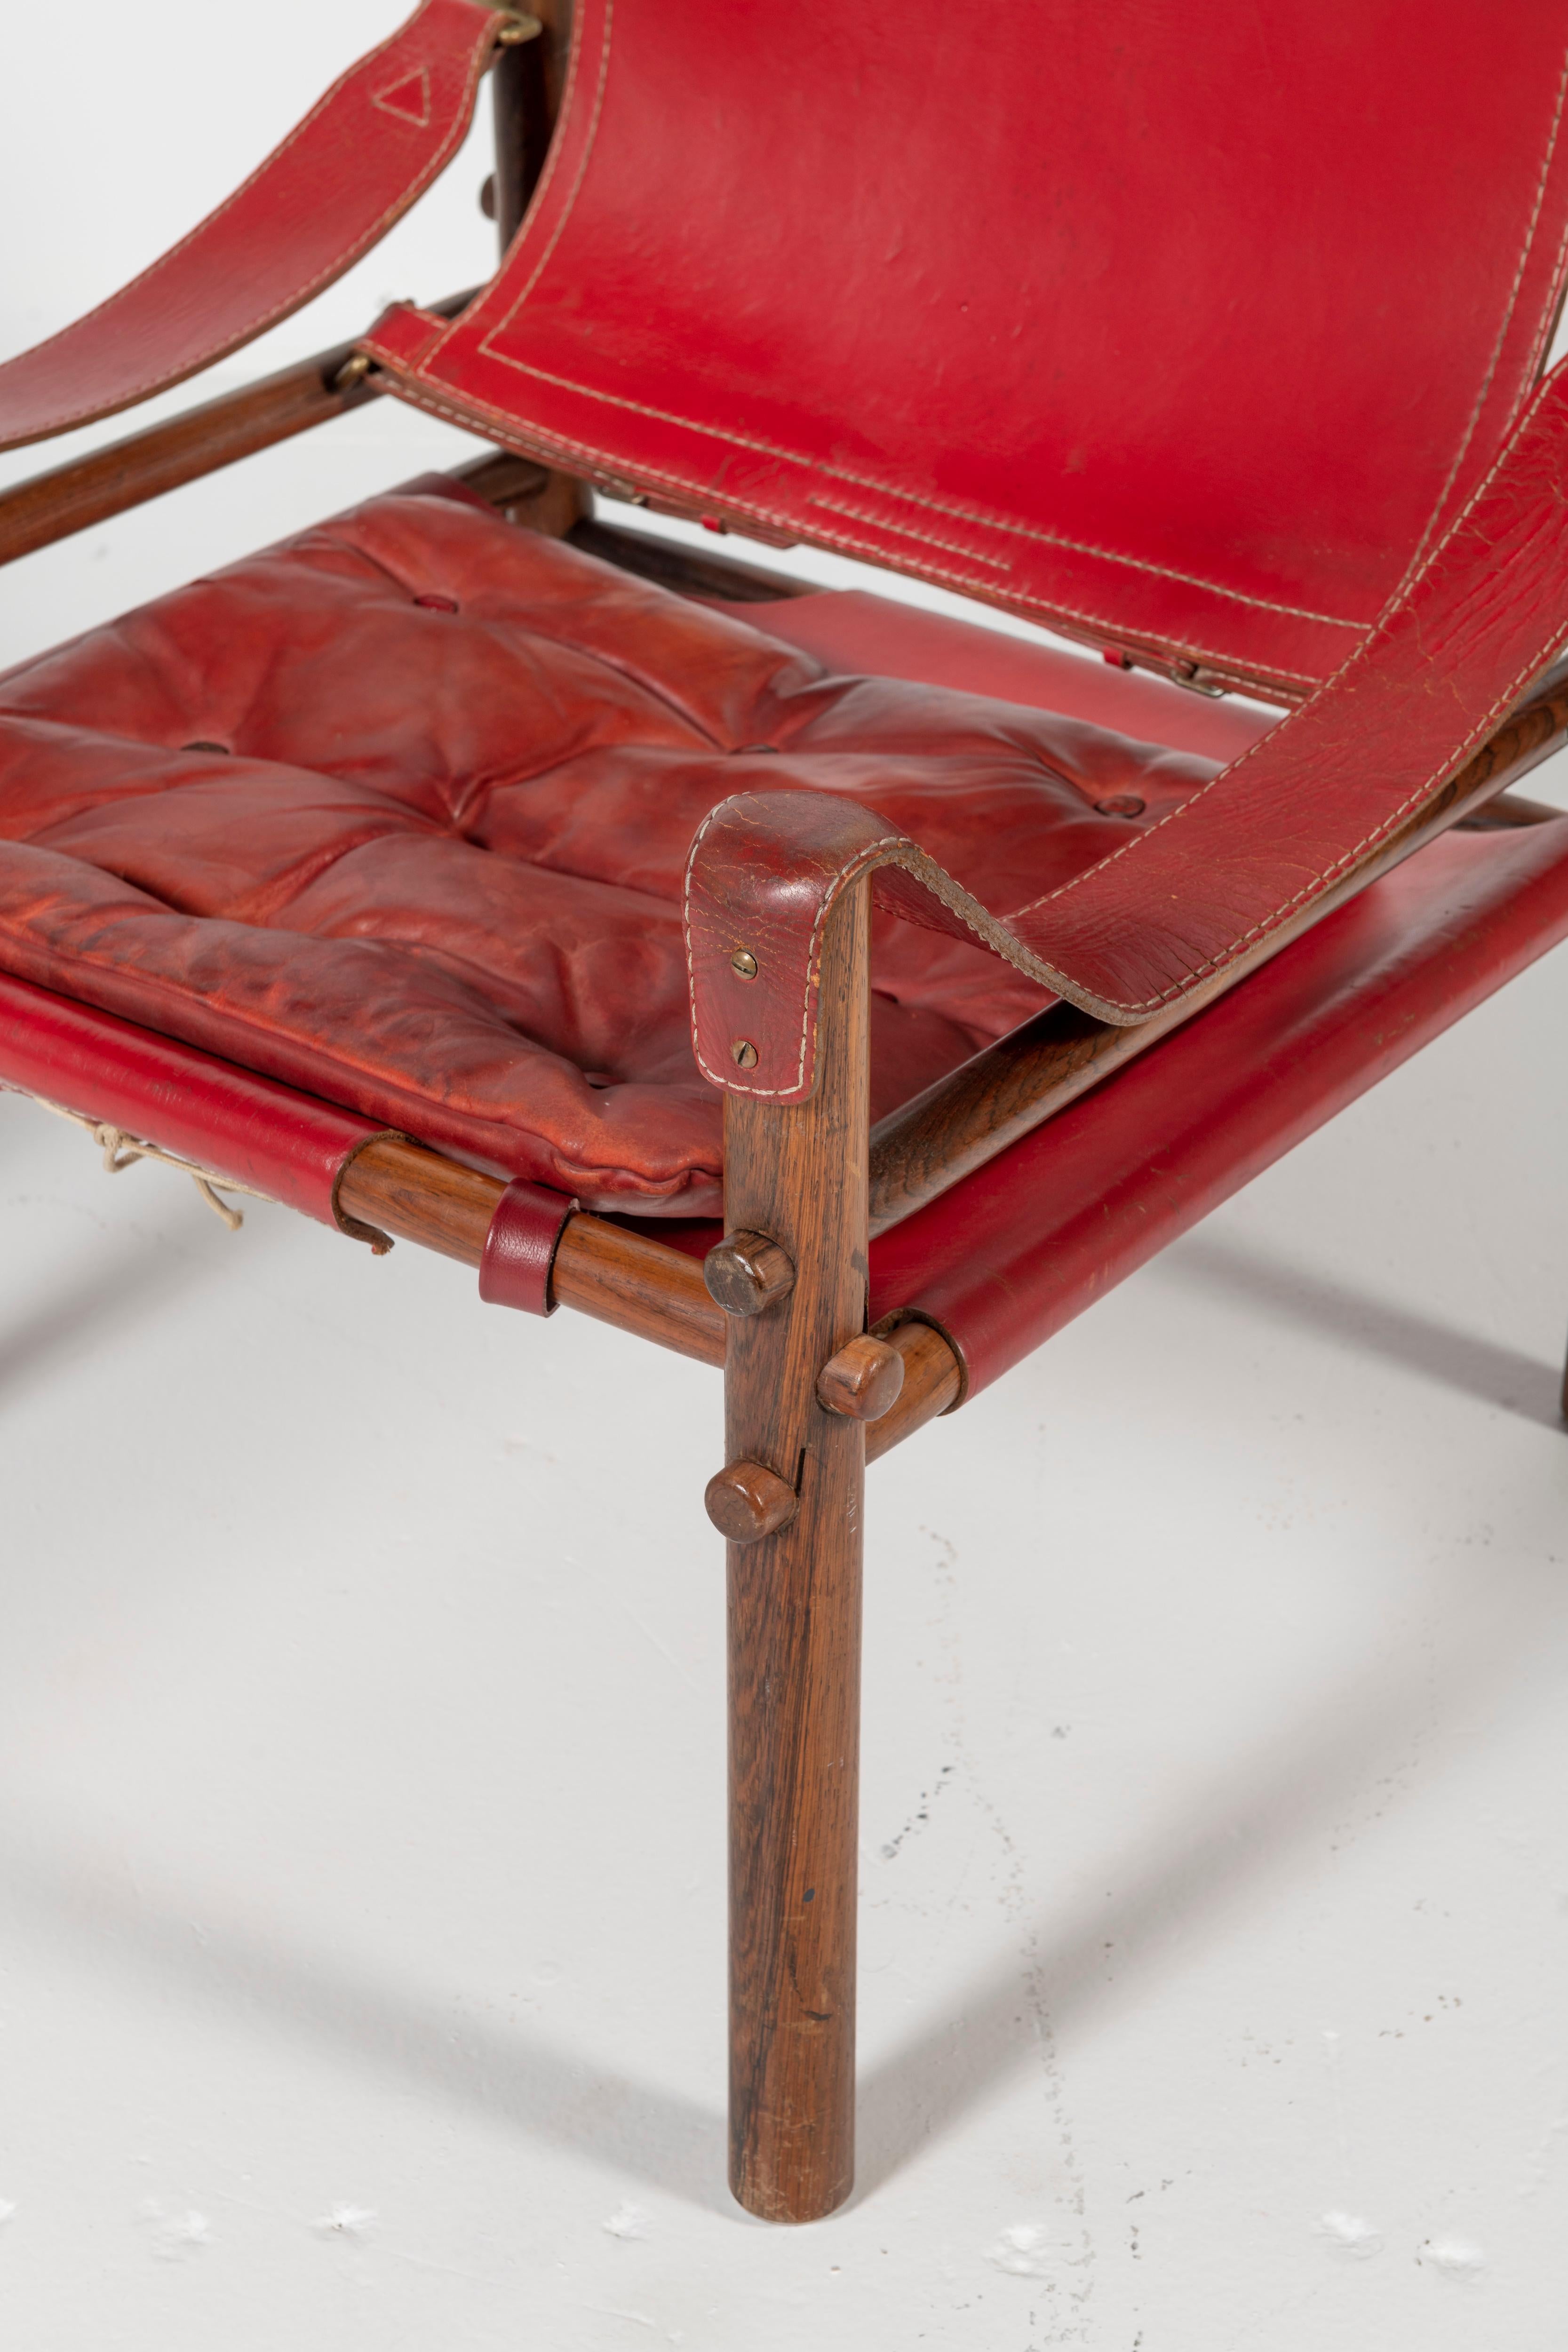 Paire de chaises safari, modèle Sirocco en bon état avec cuir rouge d'origine.
Conçu par Arne Norell, produit par Arne Norell AB à Aneby, Suède, années 1960.